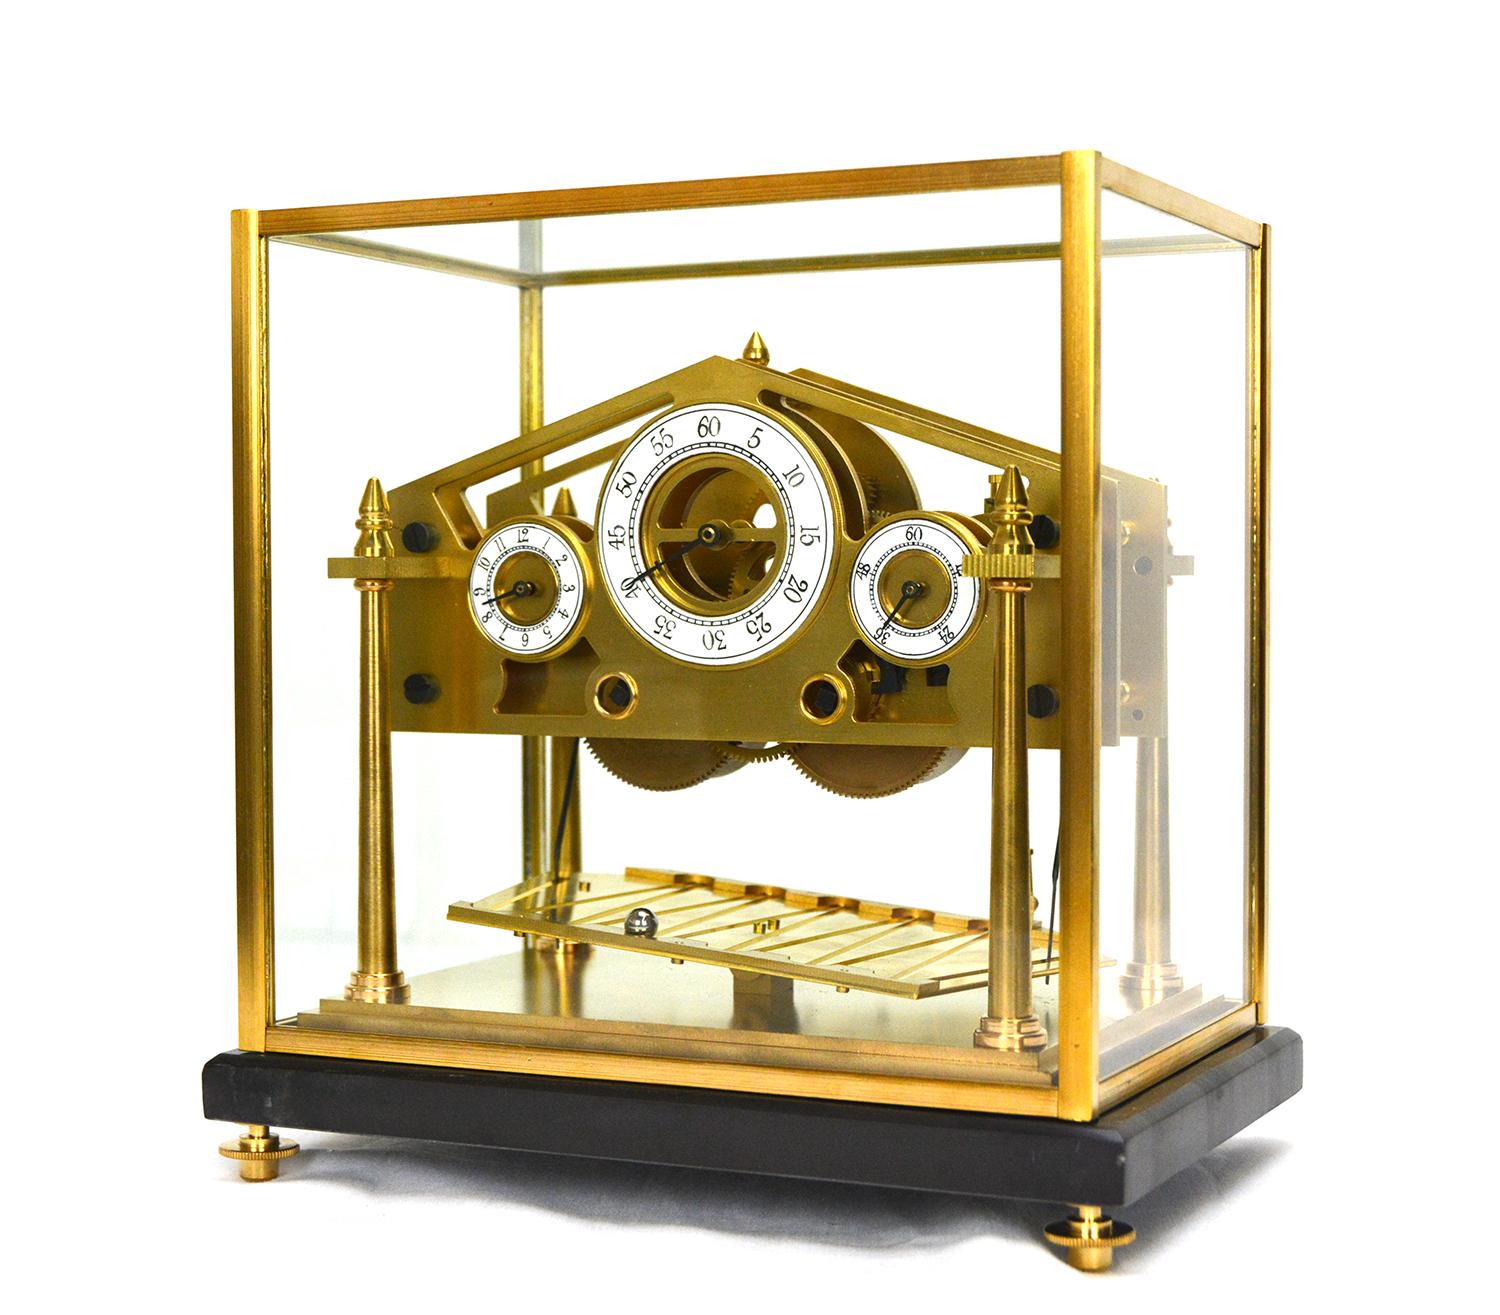 Hier ist eine schöne Miniatur Congreve rollende Kugel Uhr. Dieses Exemplar wird mit einem massiven Marmorsockel und einer Schutzkuppel geliefert. Die Glaskuppel hat einen massiven Messingrahmen. Die Uhr ist aus schwerem, massivem Messing gefertigt.